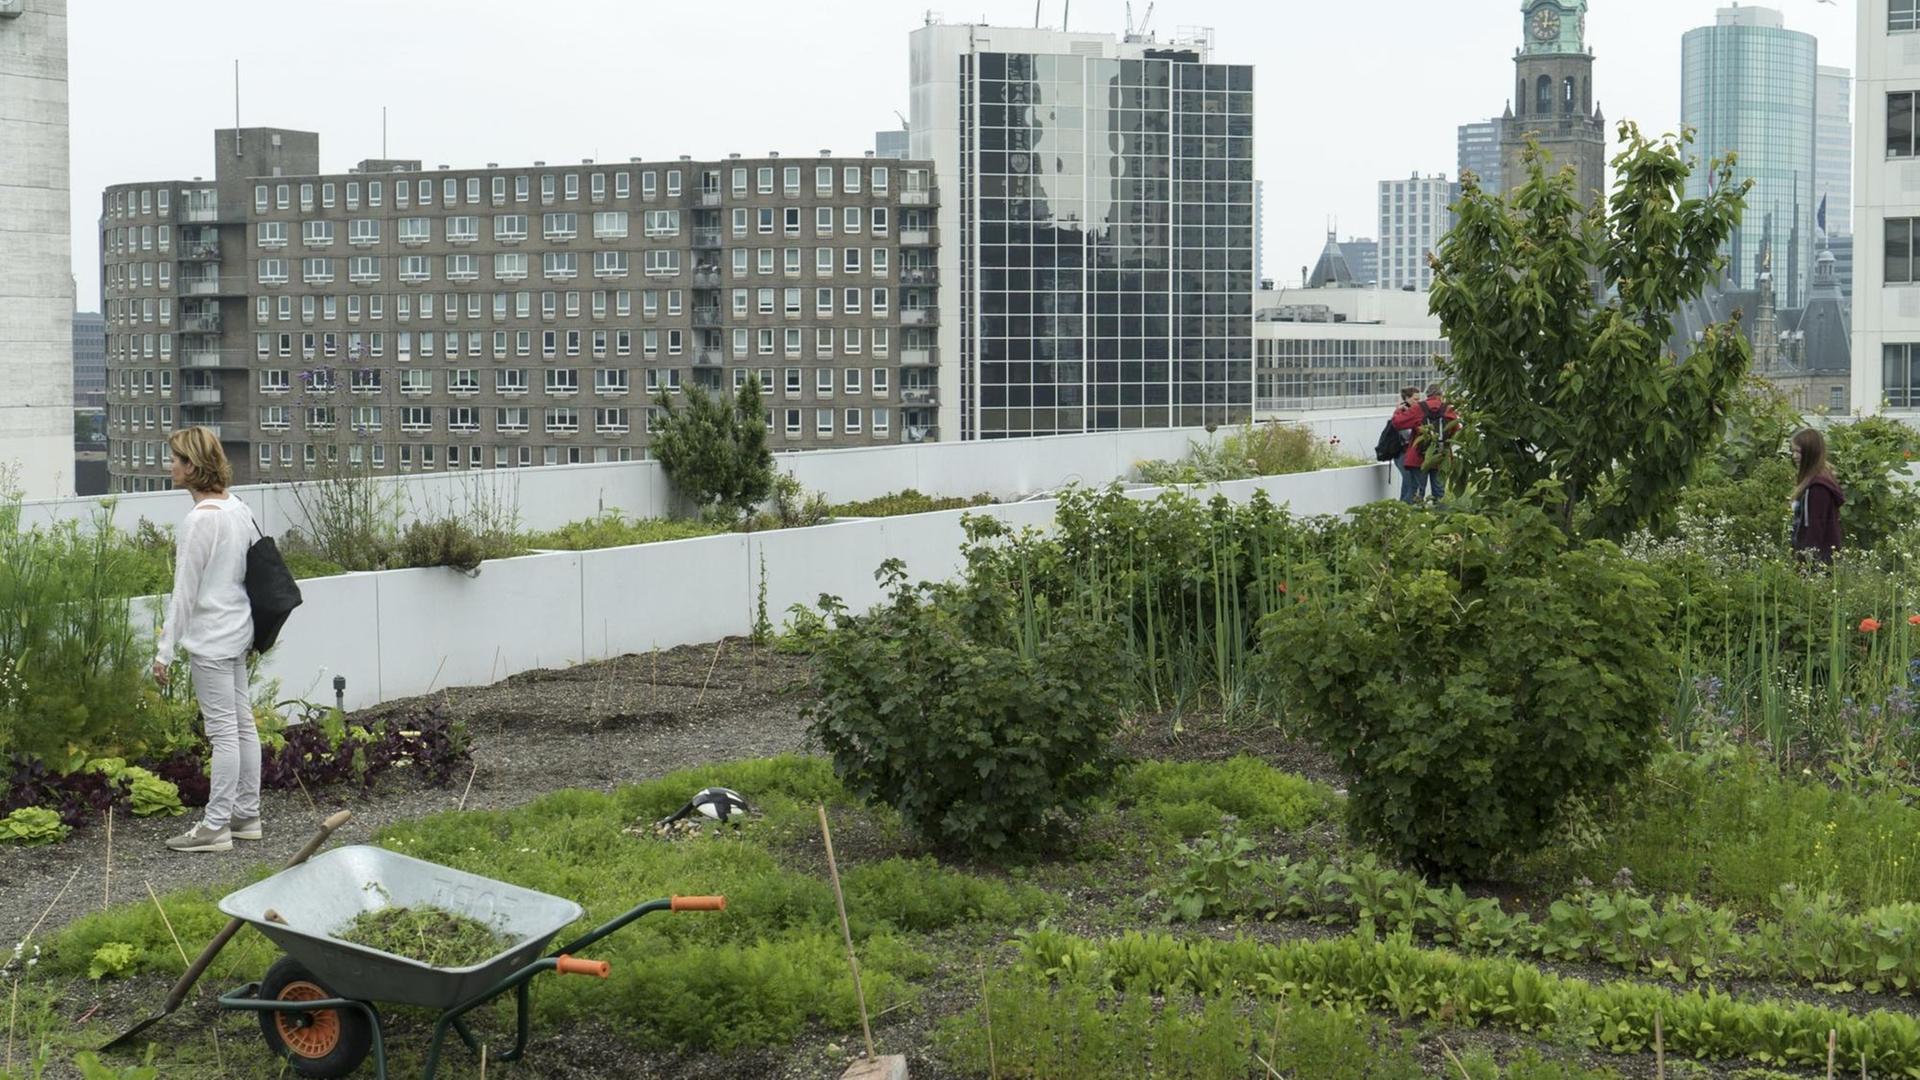 Gemüsegarten Dakakker auf dem Flachdach auf einem Büro-Hochhaus in Rotterdam